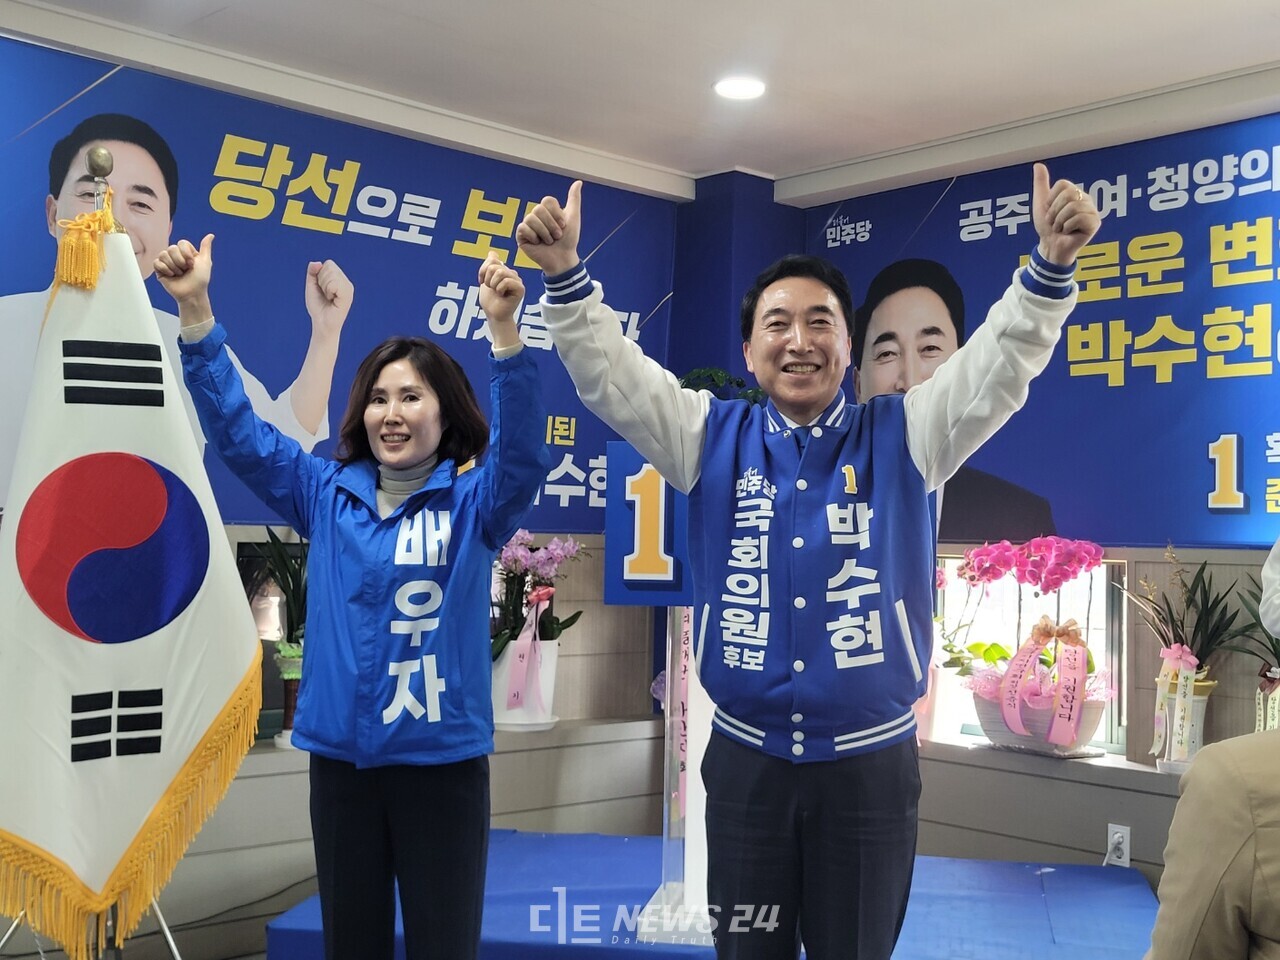 지난 23일 공주에서 열린 박수현 민주당 후보 선거사무소 개소식 모습. 김다소미 기자.